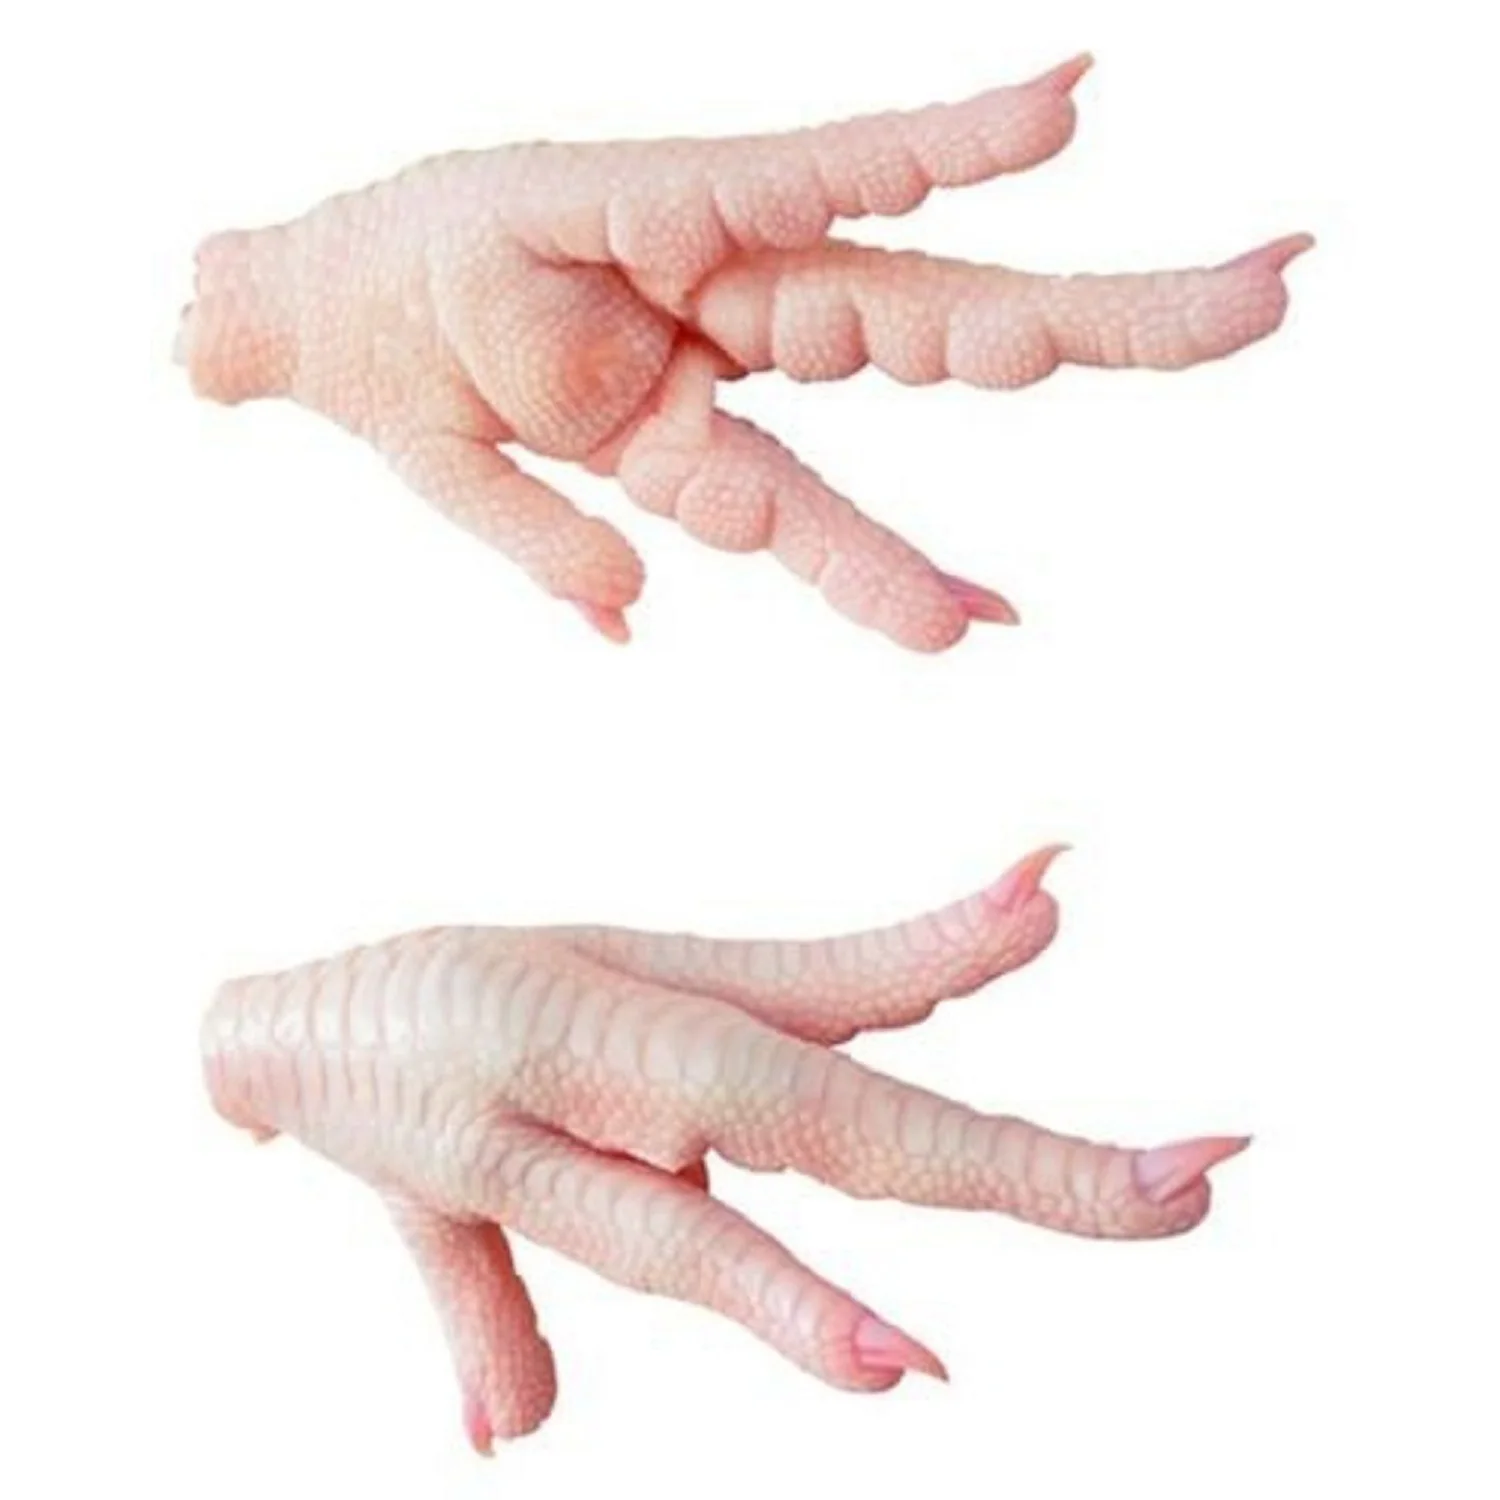 Wholesale Price Frozen Chicken Feet and Chicken Paws